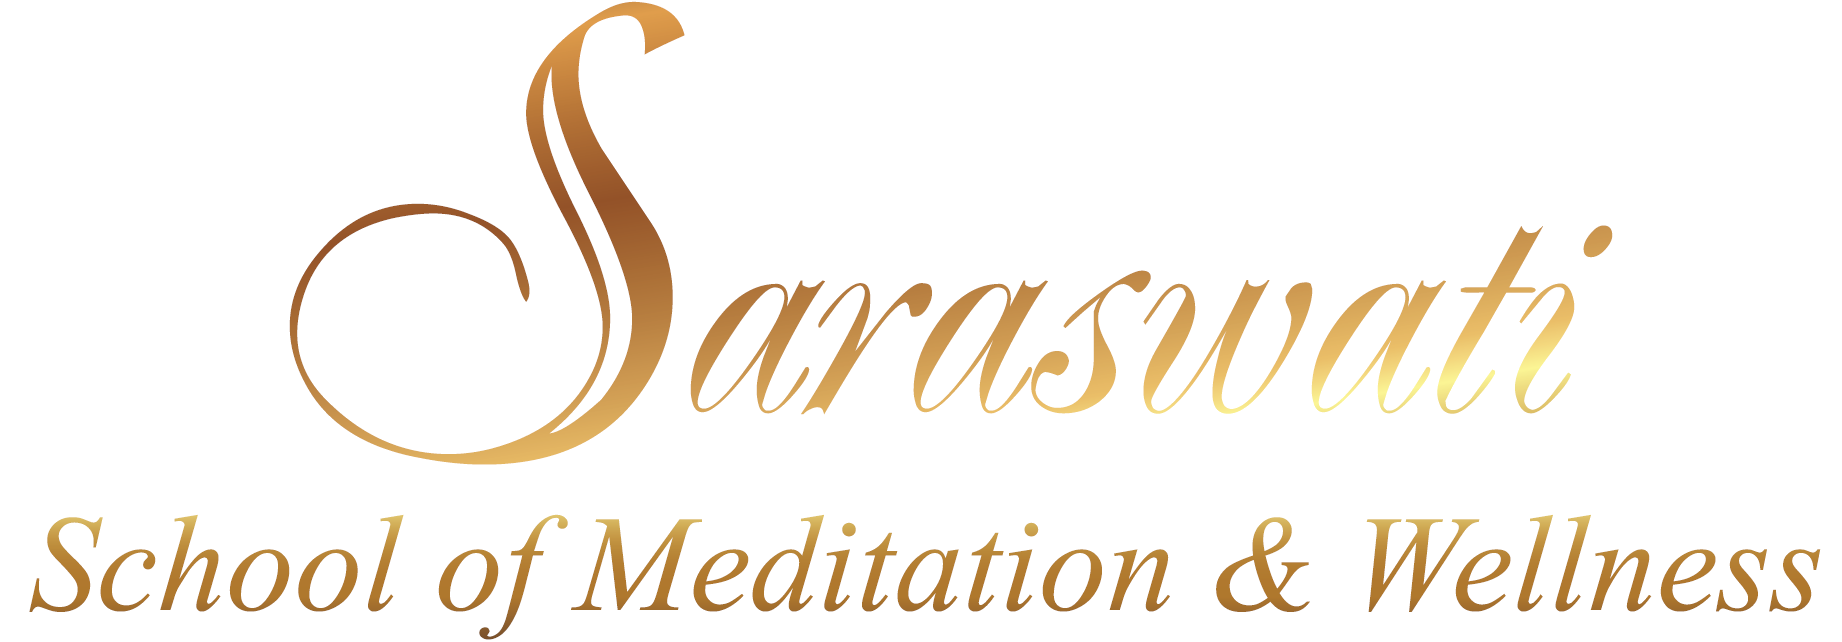 Saraswati School of Meditation